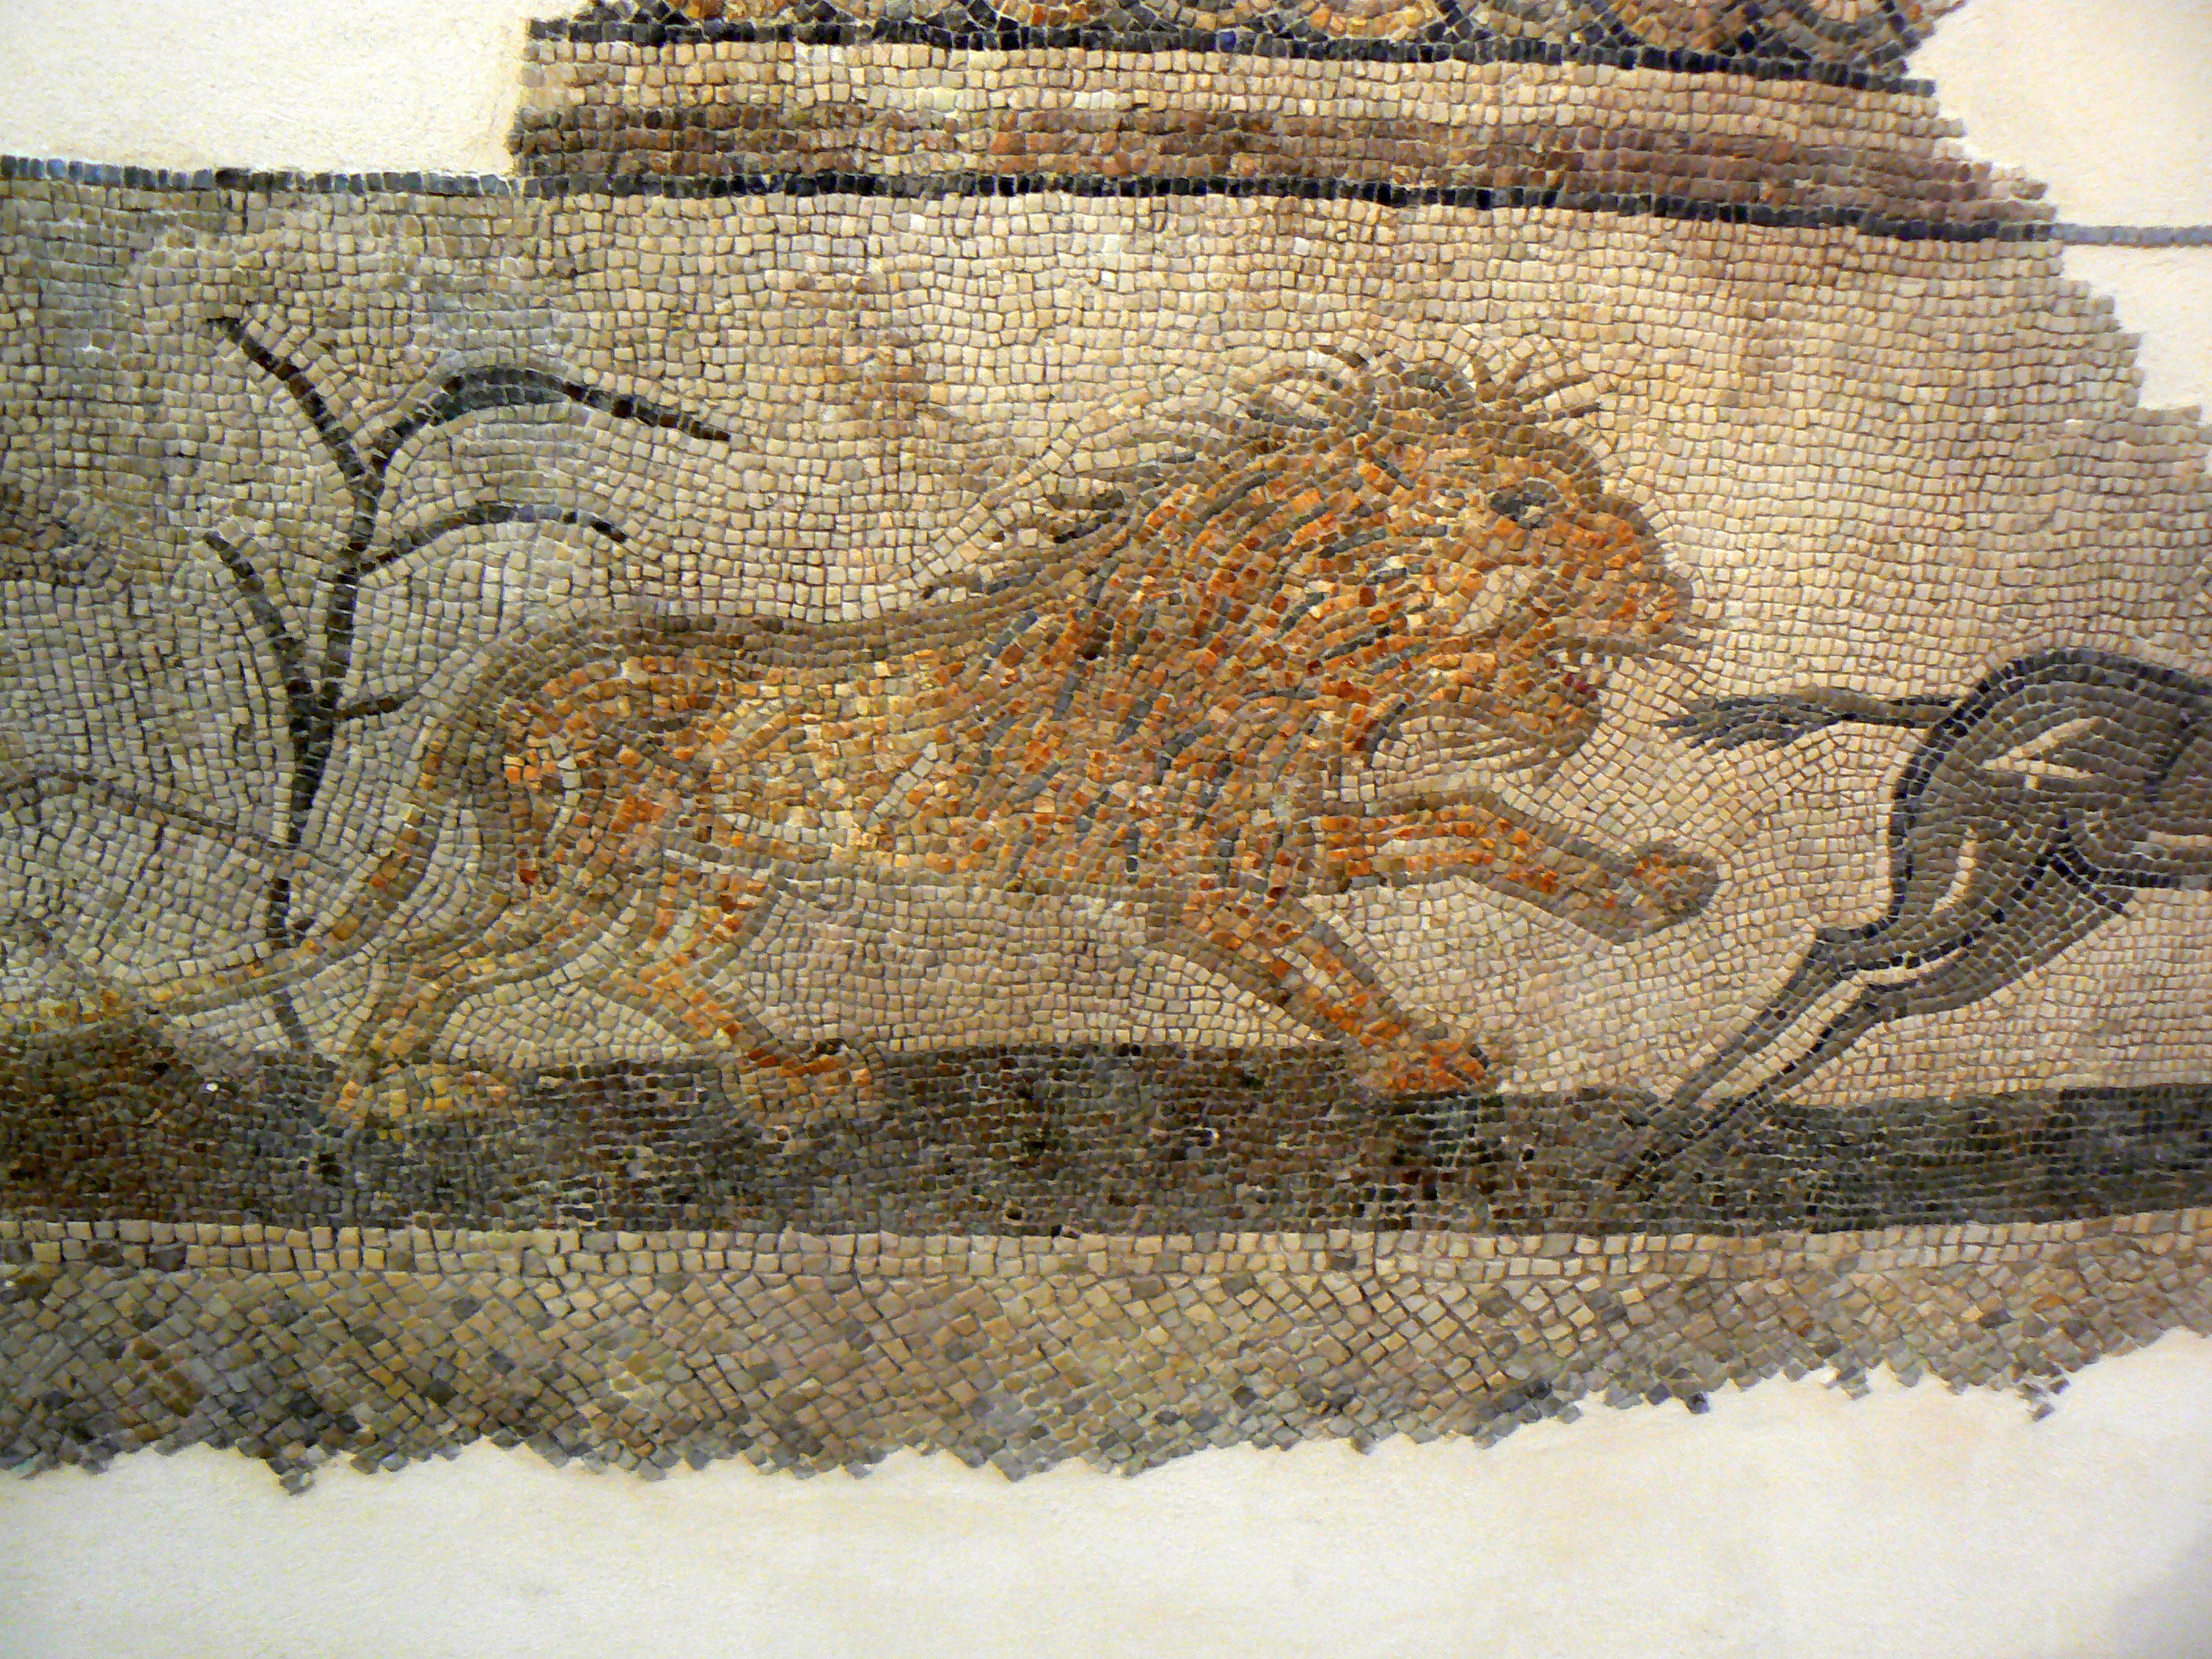 foto: https://upload.wikimedia.org/wikipedia/commons/e/e3/Mosaico_domus_chirurgo_1.jpg